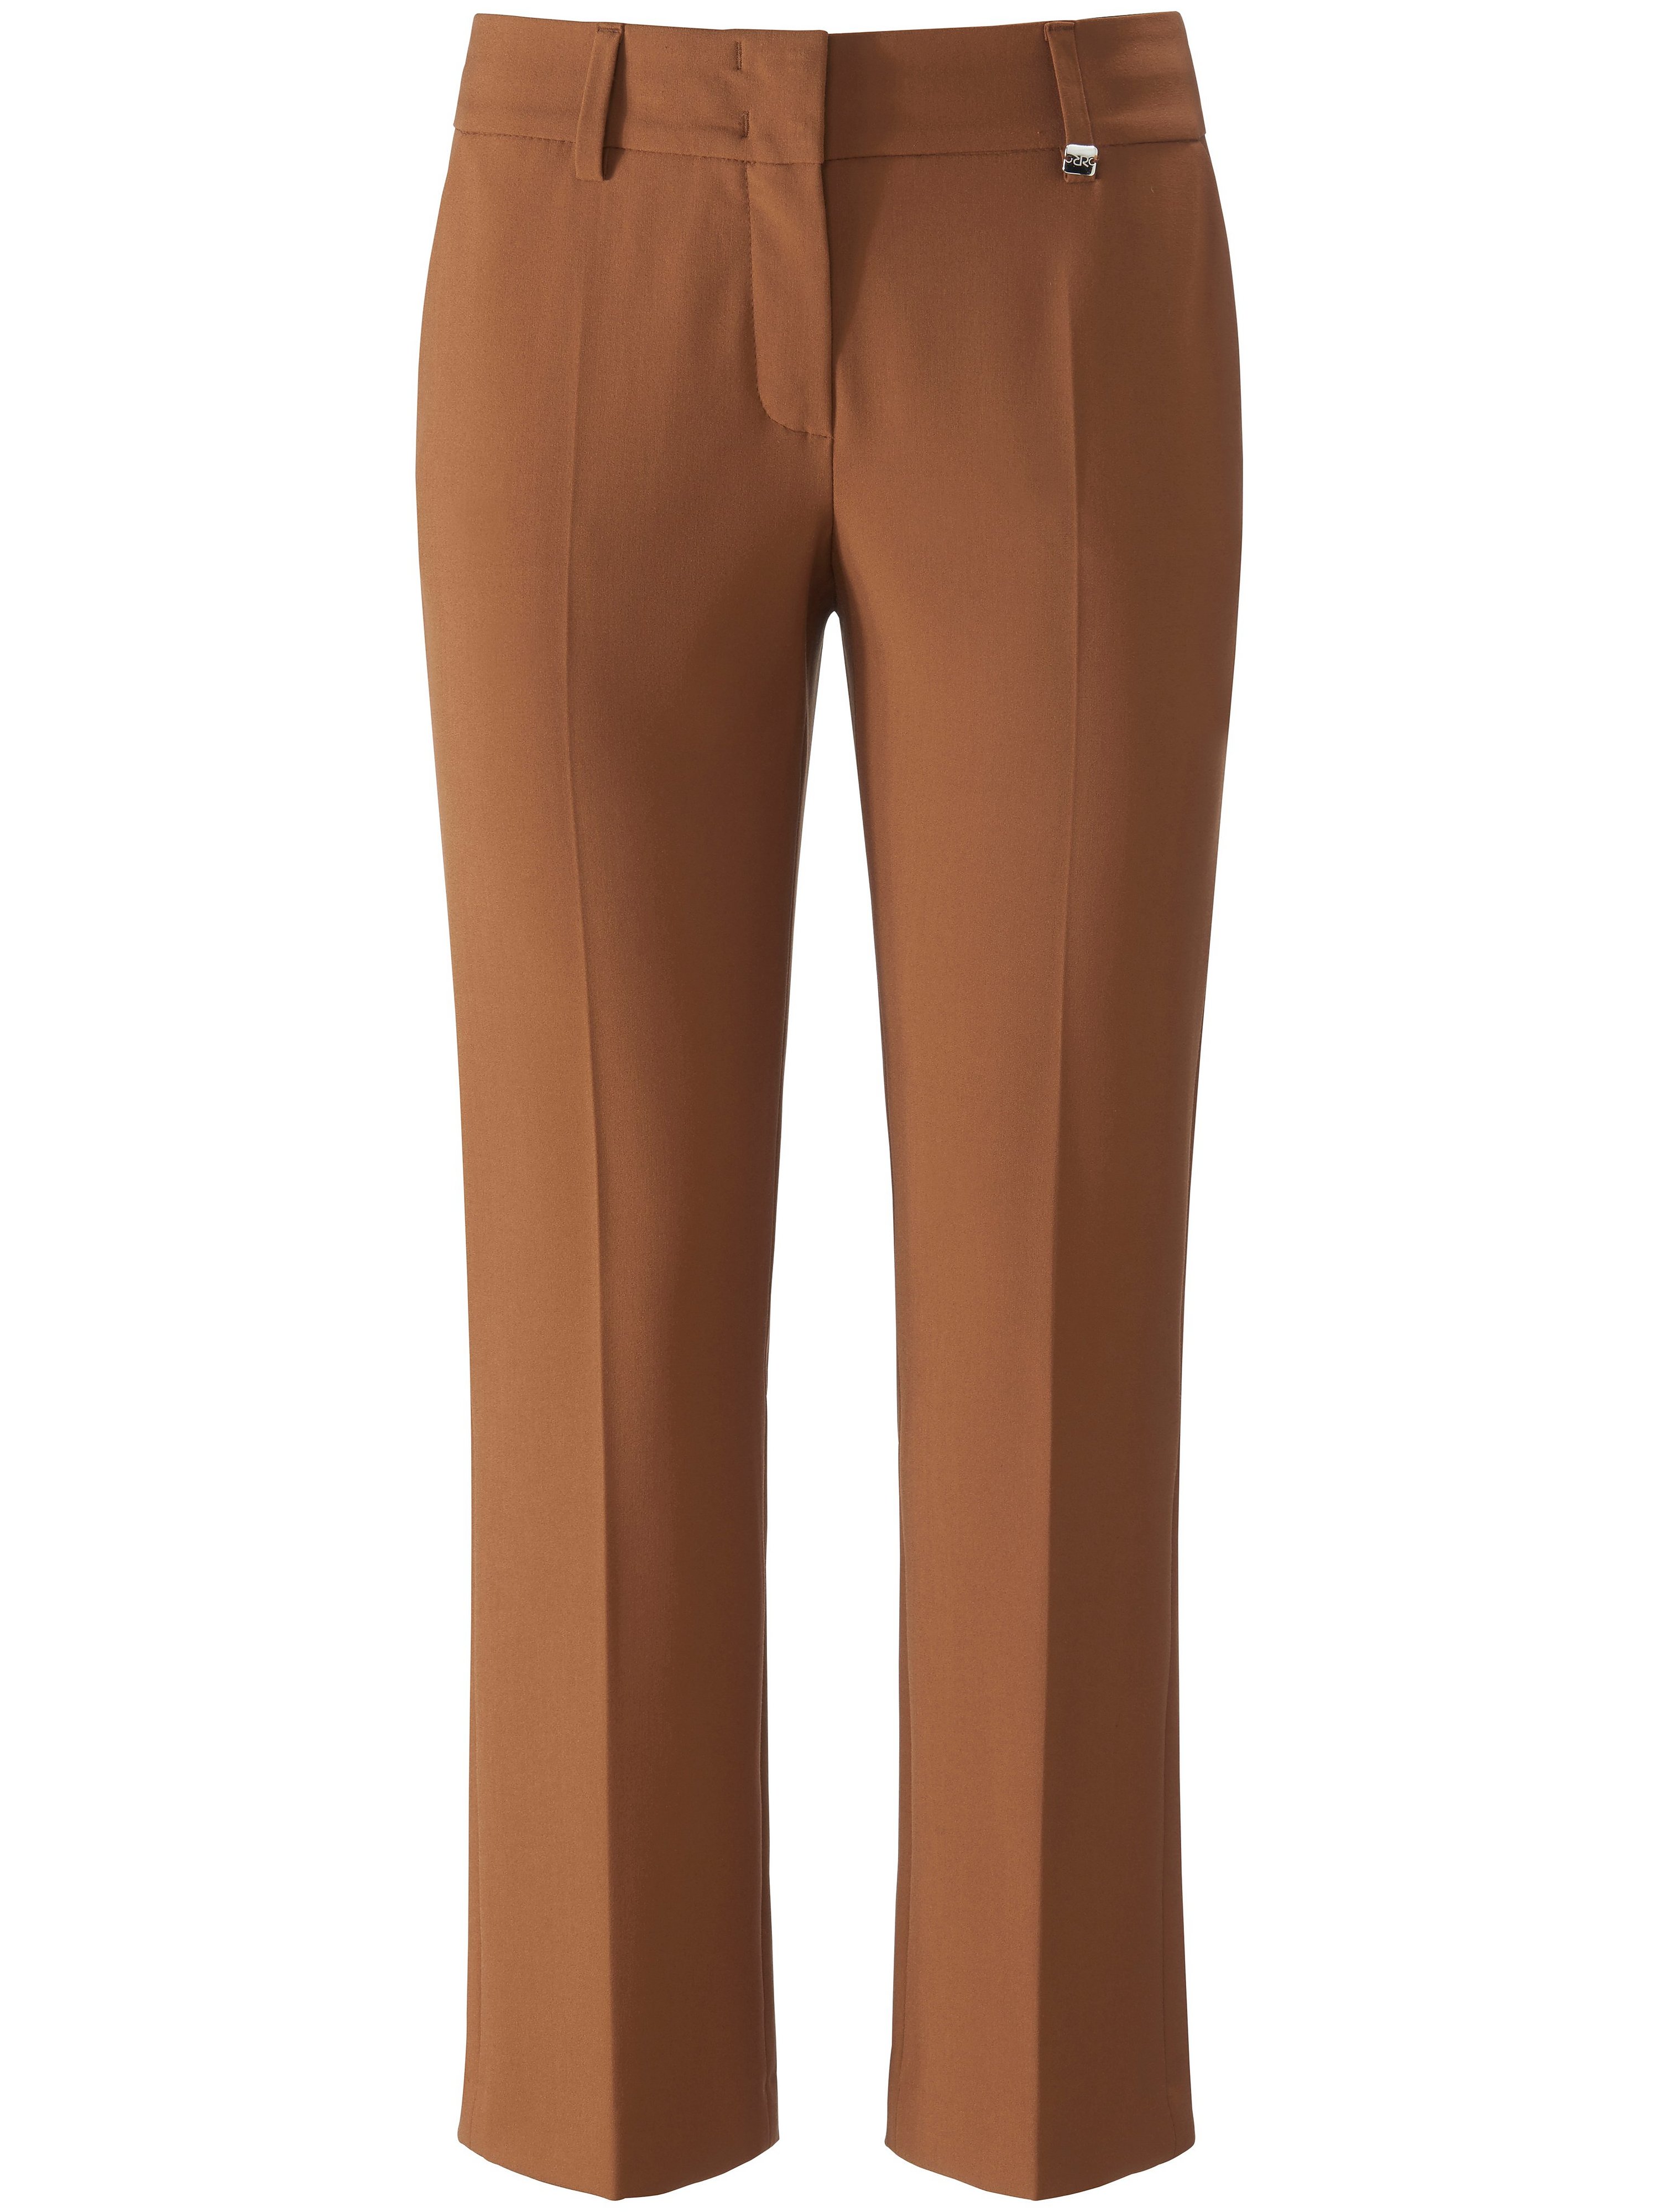 Le pantalon 7/8 modèle Dora Cropped  Raffaello Rossi marron taille 46